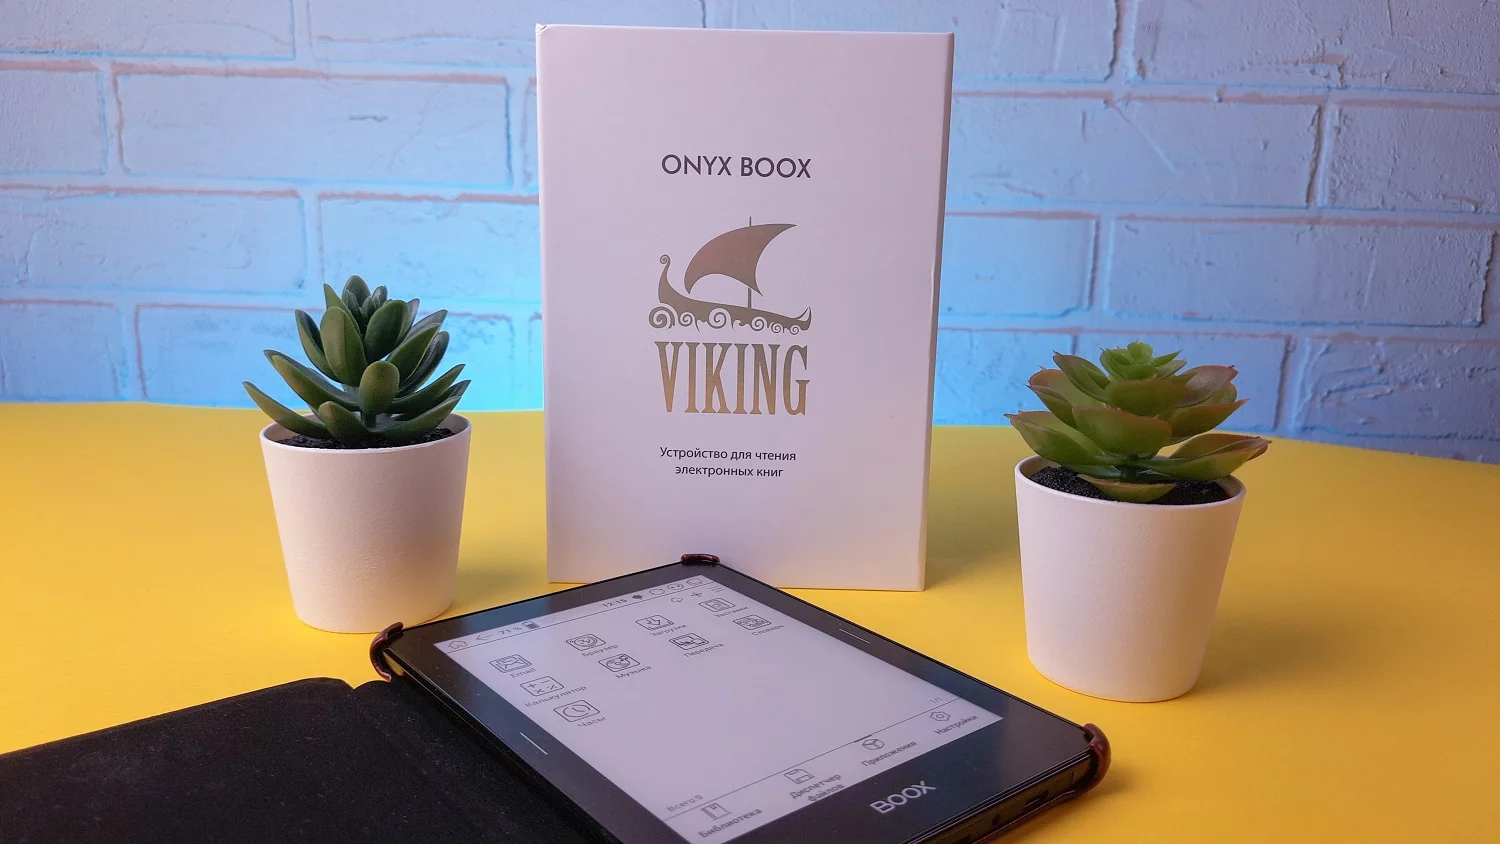 Обзор Onyx Boox Viking: может ли современная электронная книга заменить смартфон - фото 9